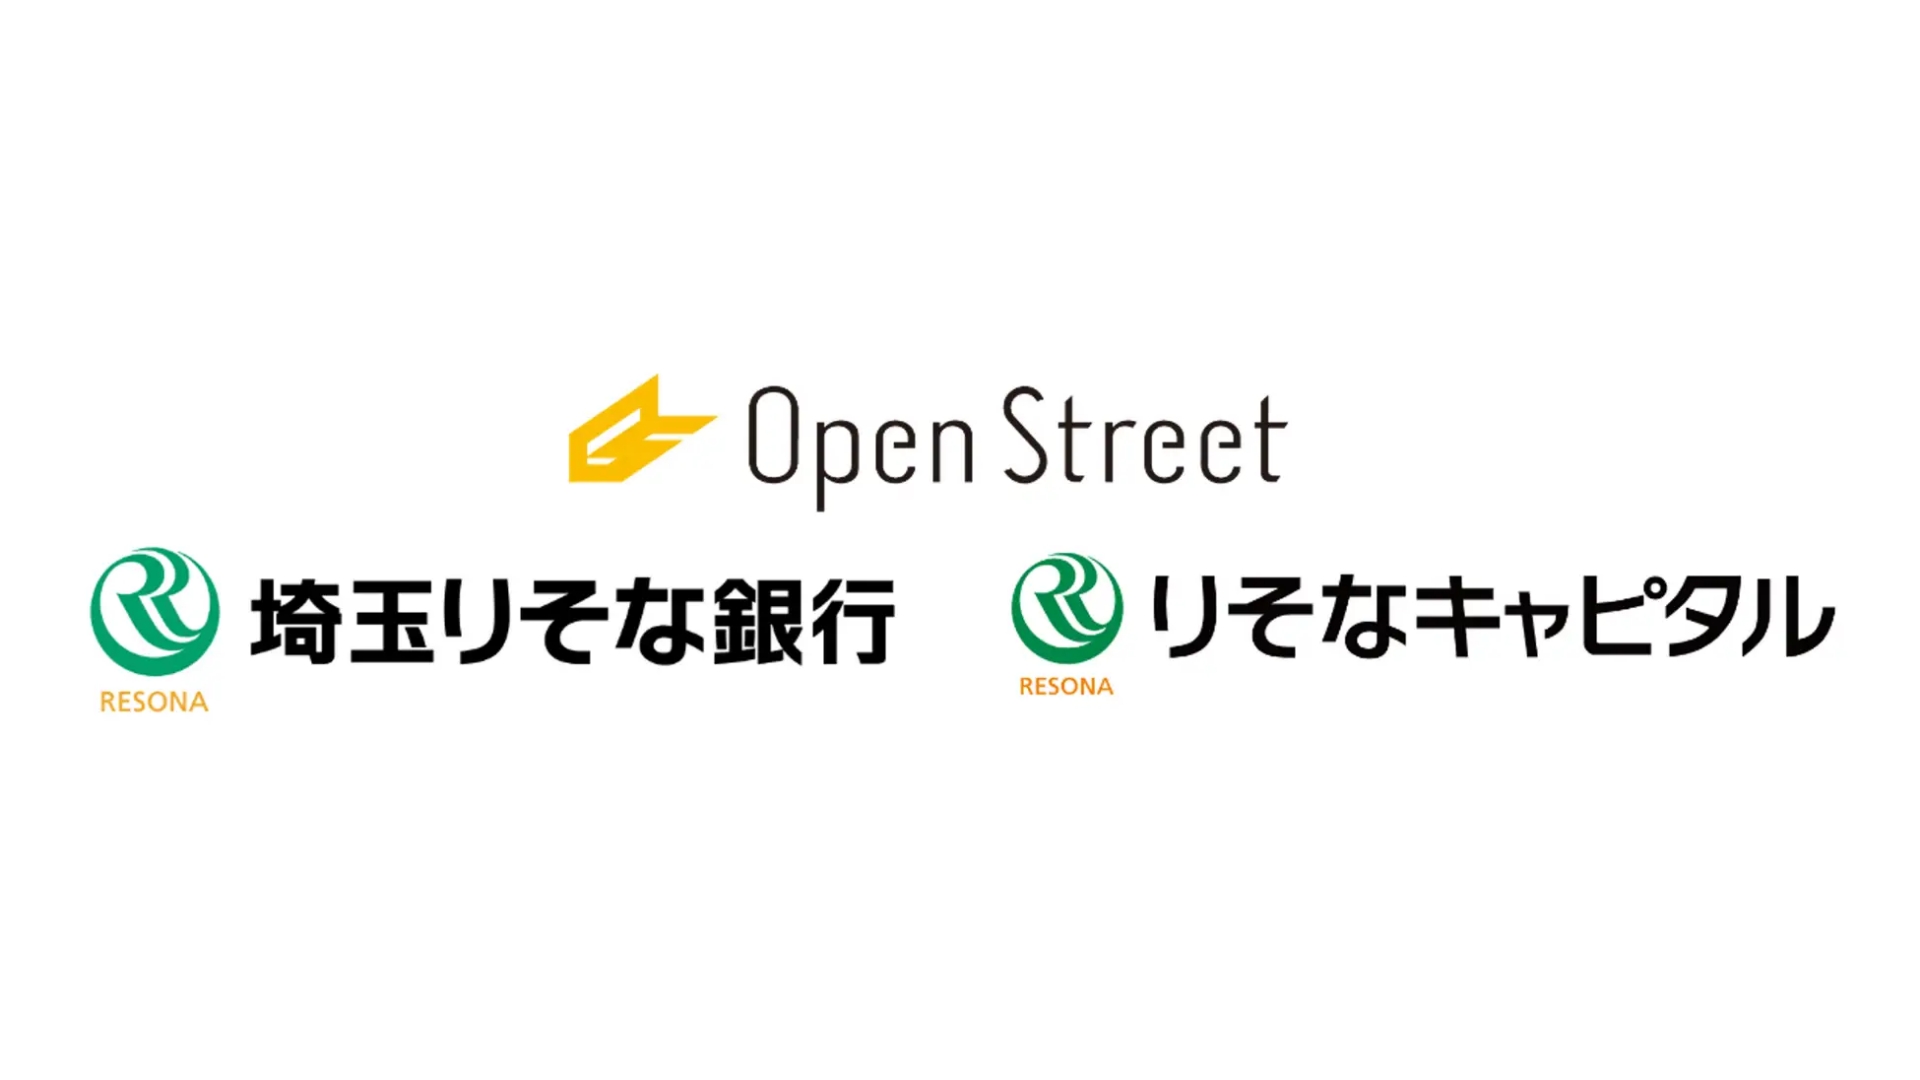 シェアモビリティプラットフォームを展開するOpenStreet株式会社が資金調達を実施